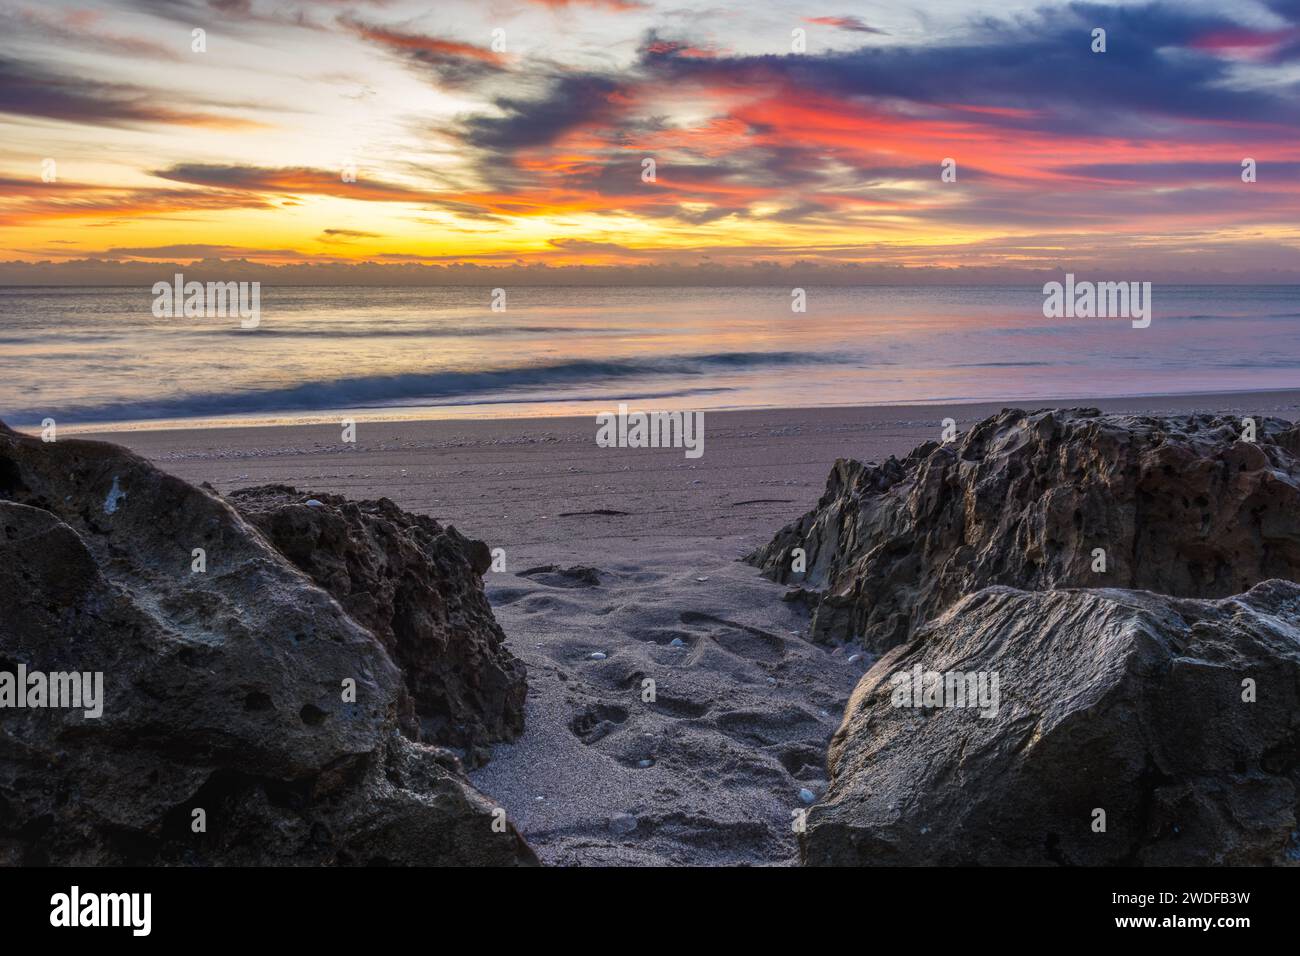 Vivace alba sulla spiaggia con nuvole impressionanti e primo piano roccioso, perfetta per campagne di marketing, blog di viaggio e ispirazione artistica. Foto Stock